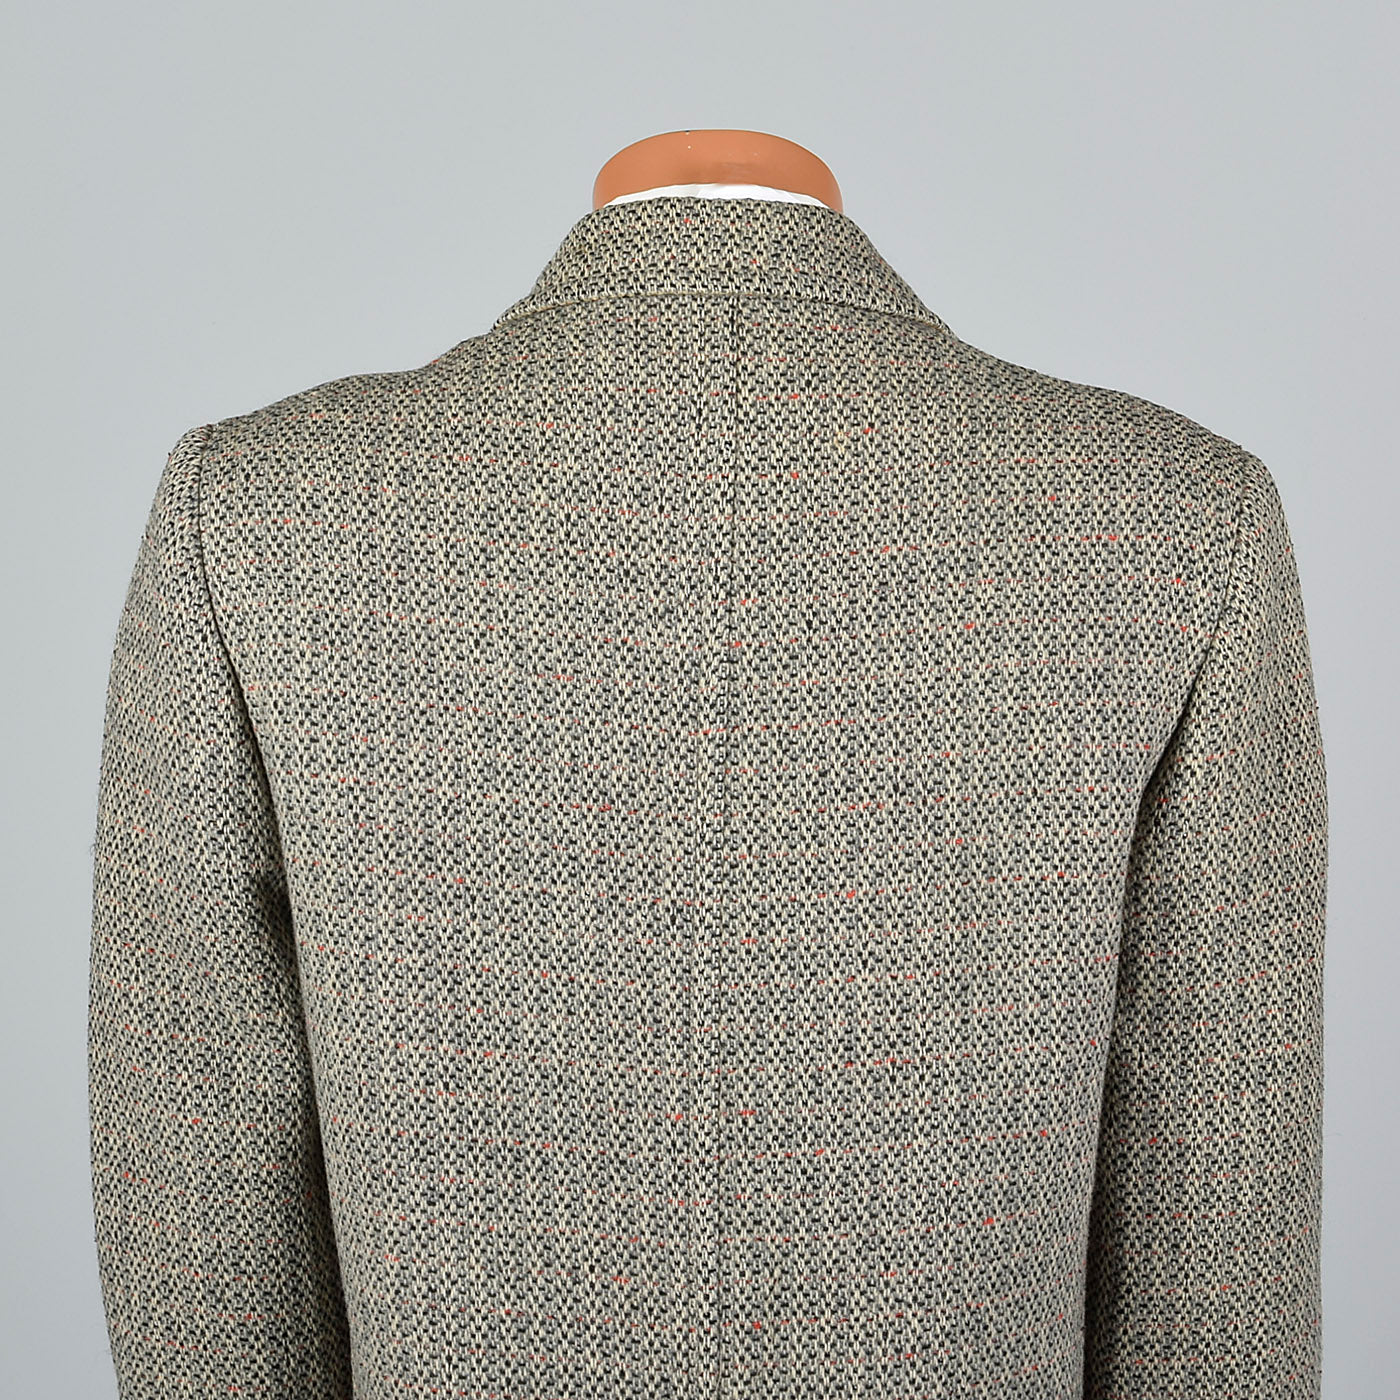 1950s Mens Tweed Overcoat